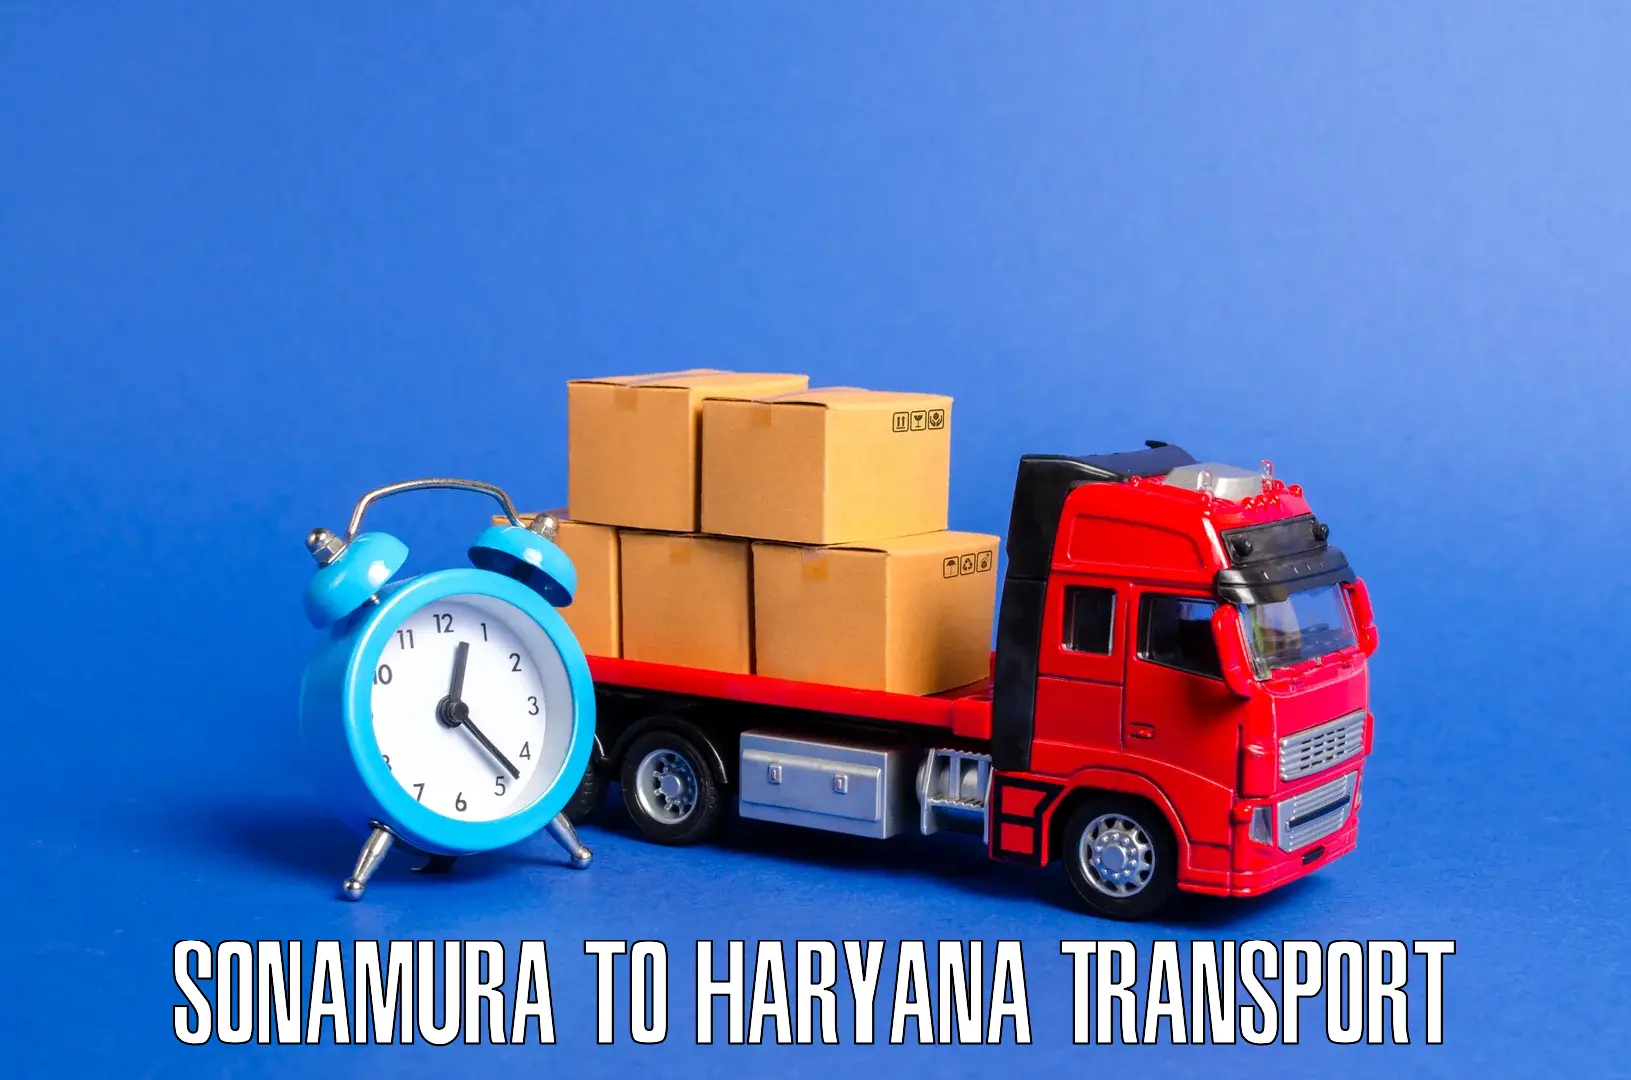 Online transport service Sonamura to IIIT Sonepat